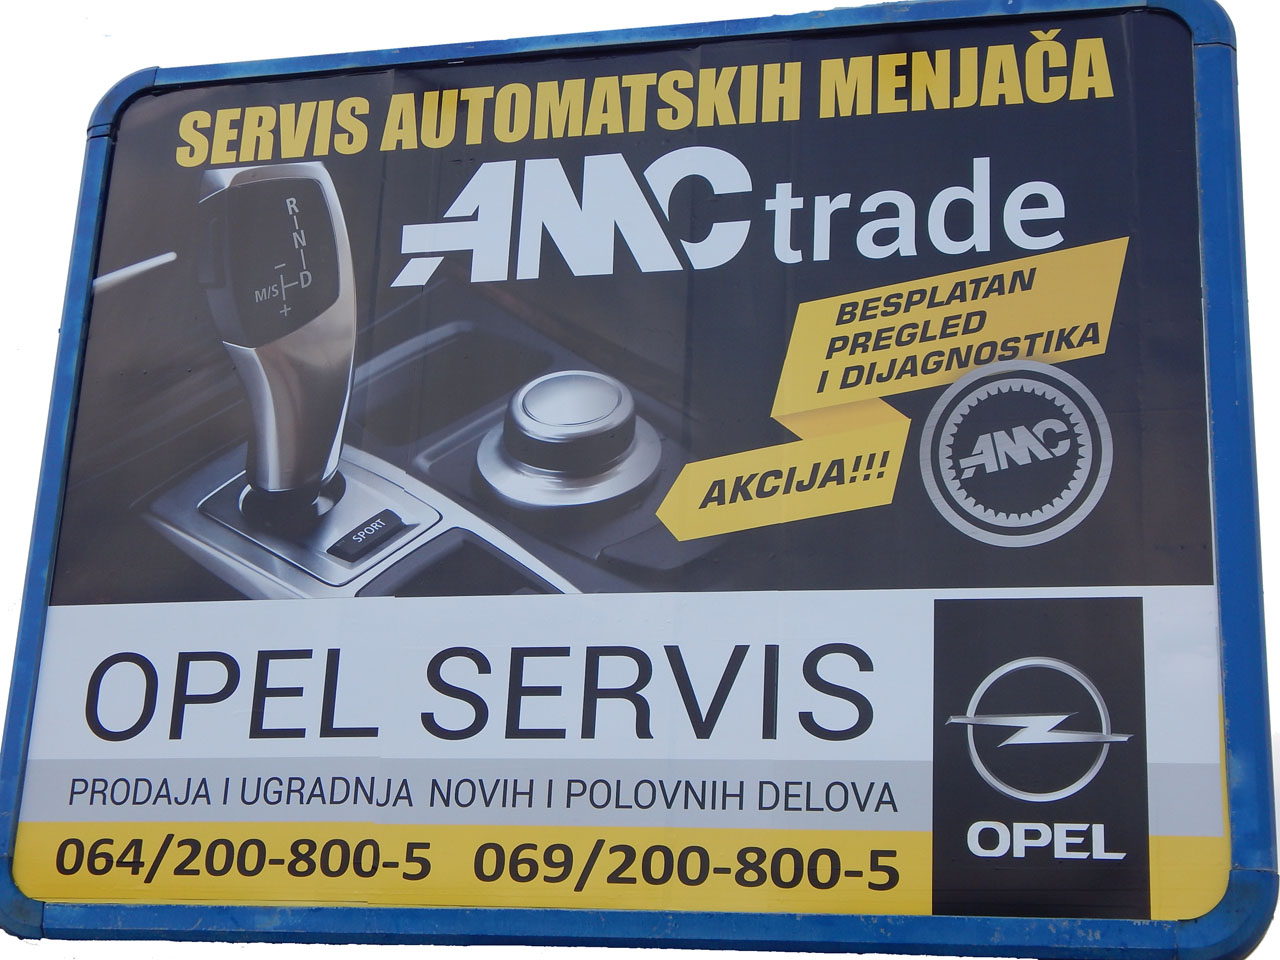 Slika 2 - AMC TRADE Servisi automatskih menjača Beograd